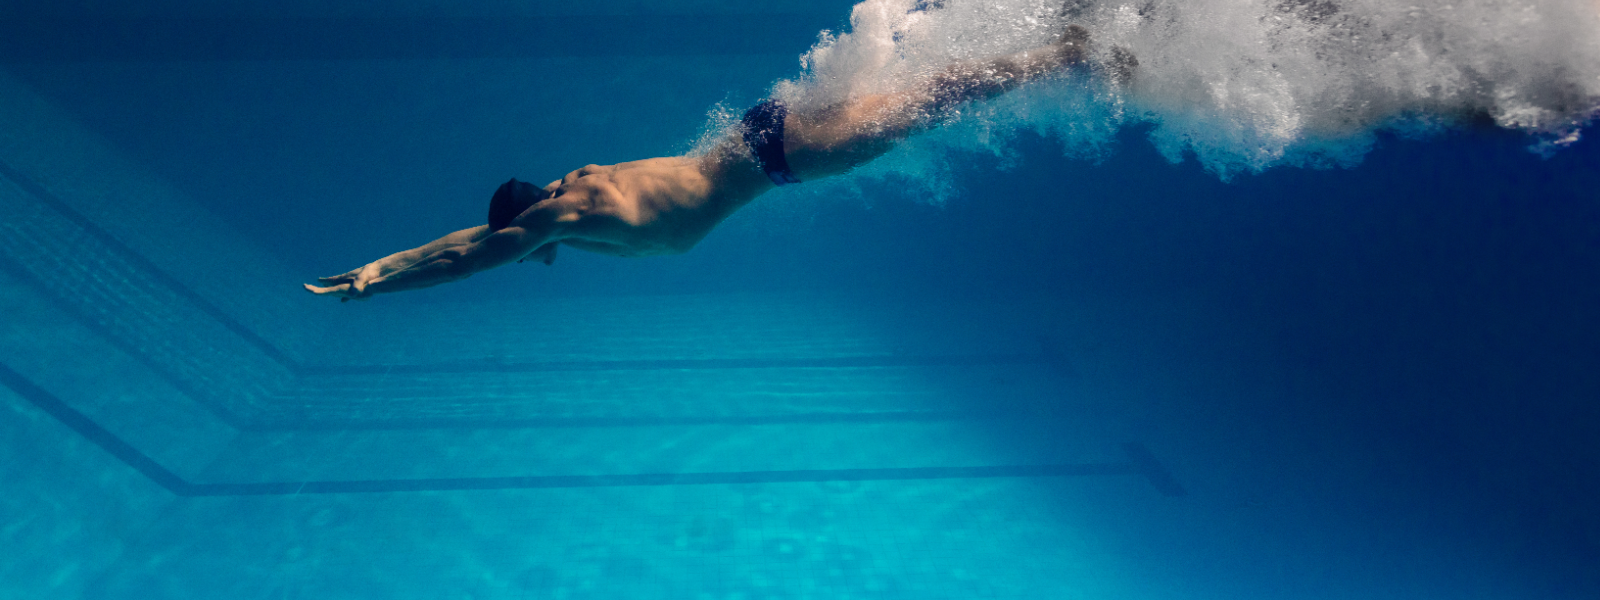 SWIMERA OÜ - Tegeleme kvaliteetse ujumisvarustuse müümisega, mis on mõeldud nii harrastajatele kui ka võistlussportla...